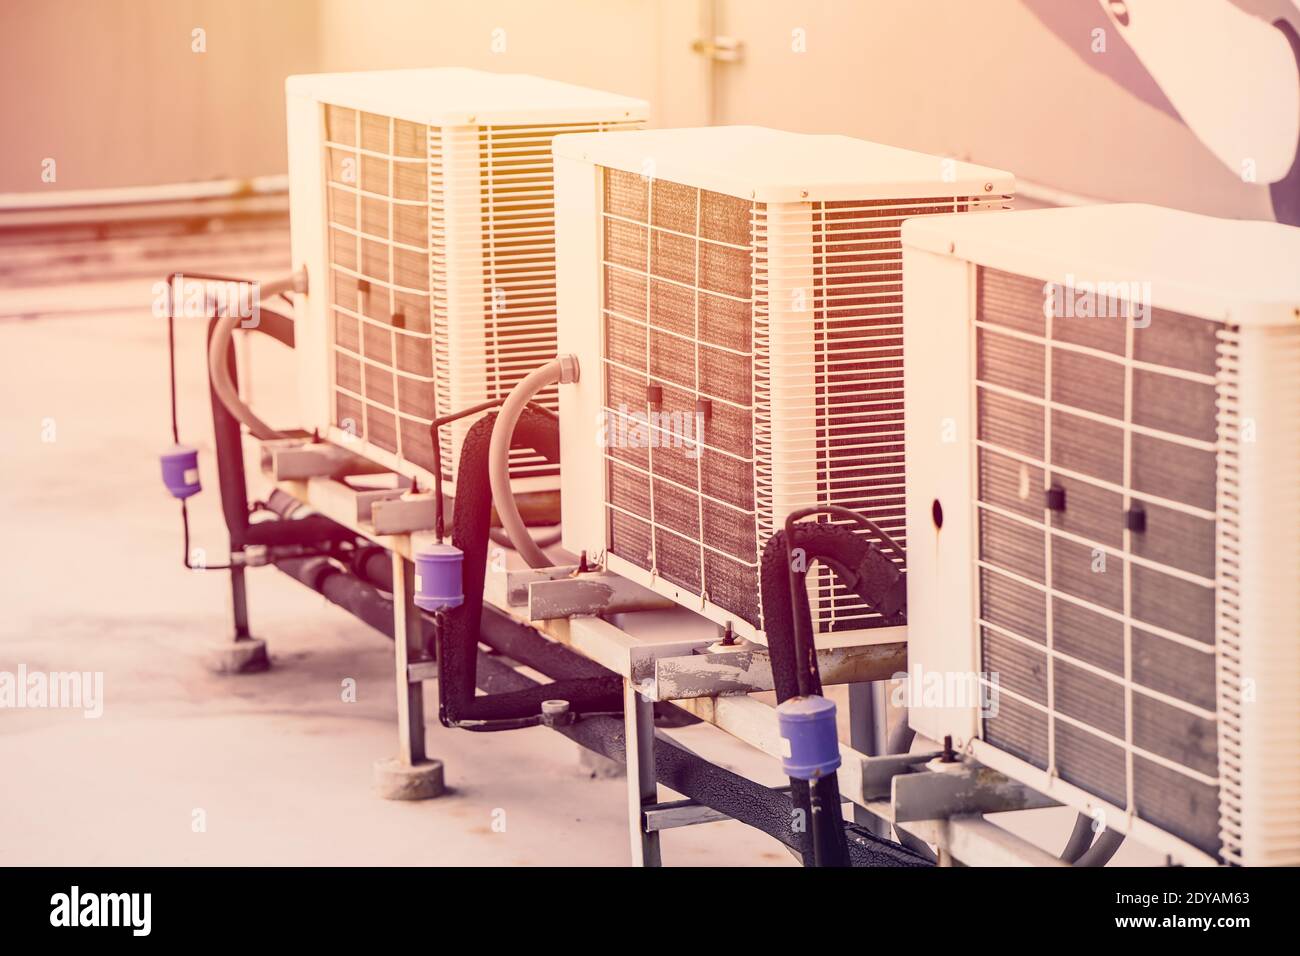 la rangée de compresseurs de climatiseur a installé un immeuble de bureaux extérieur avec des températures chaudes en été. Banque D'Images